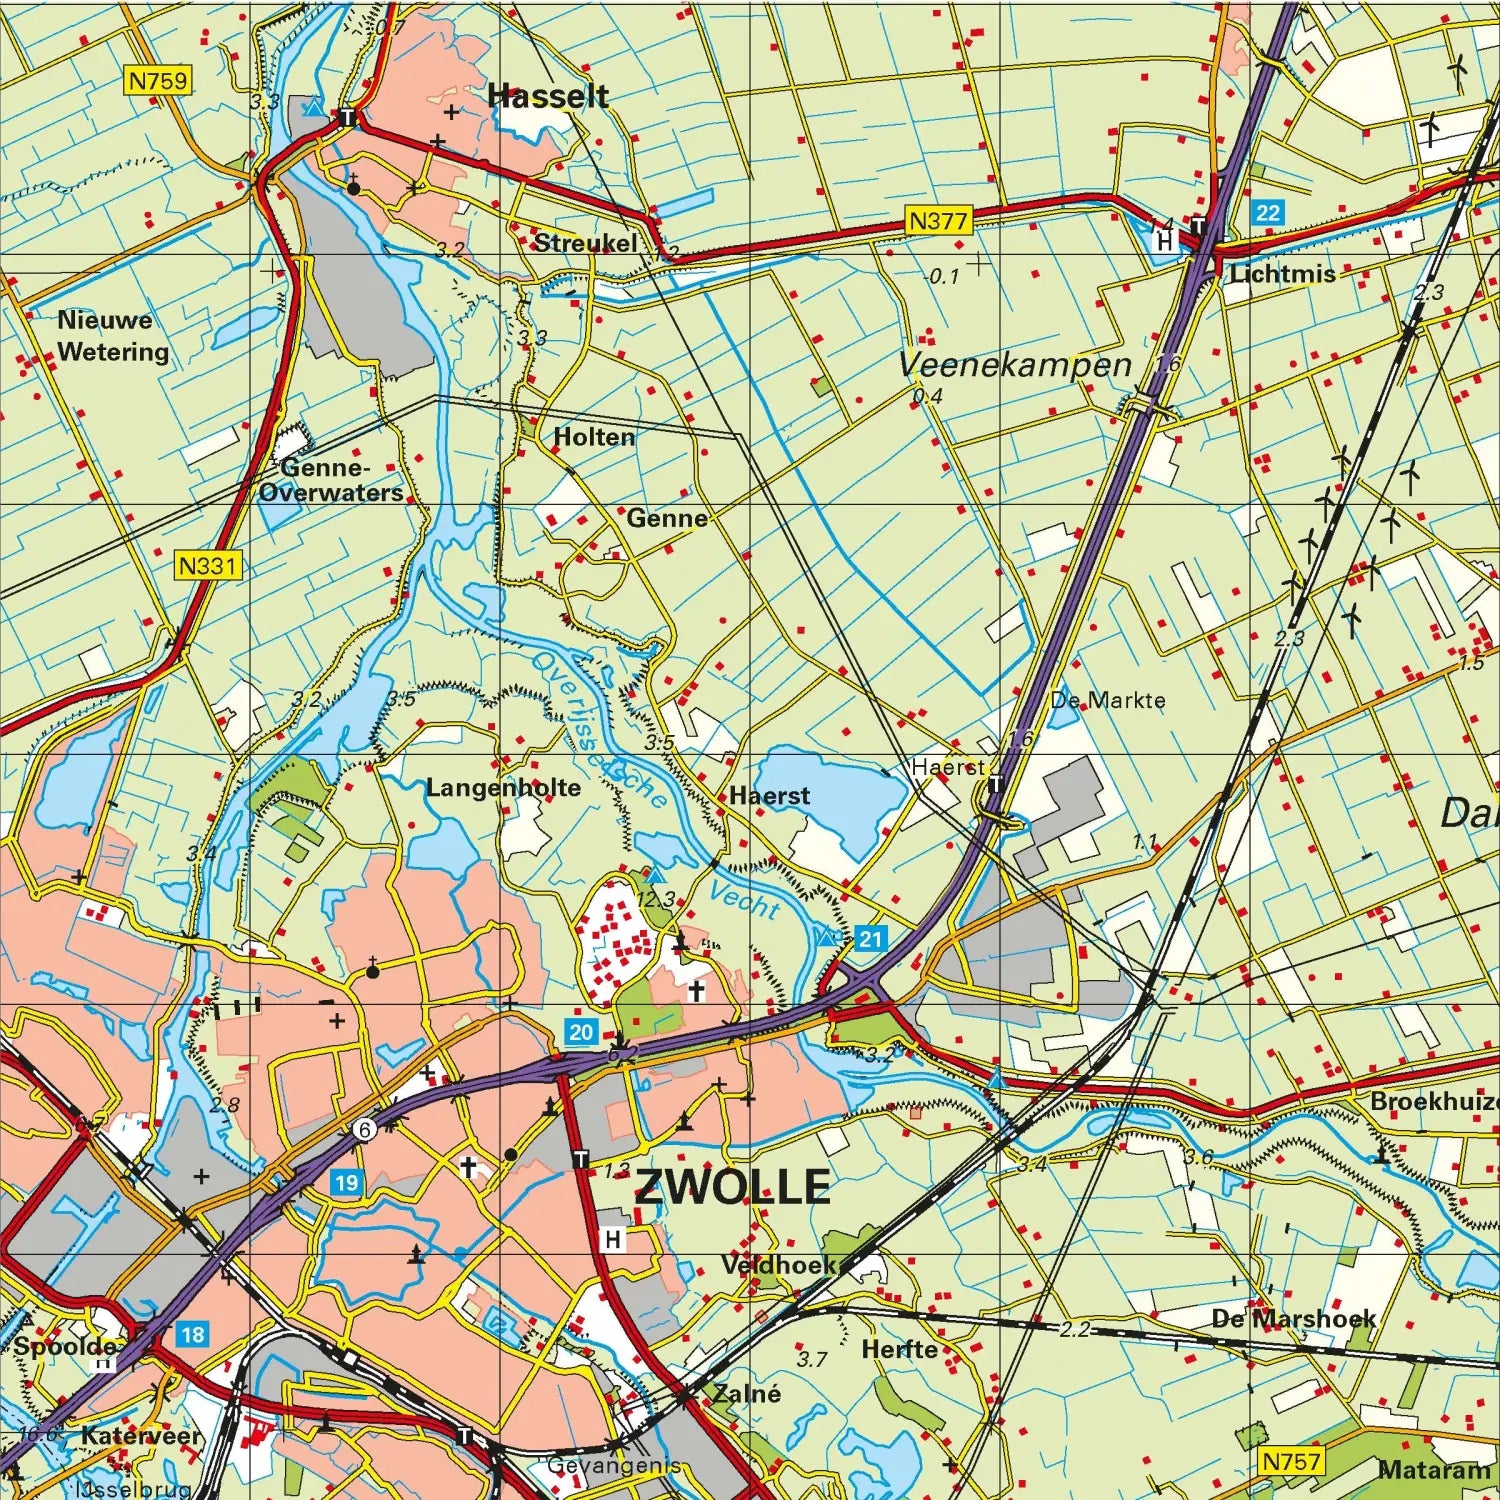 Topografische kaart 1:100.000 - 14 Zwolle